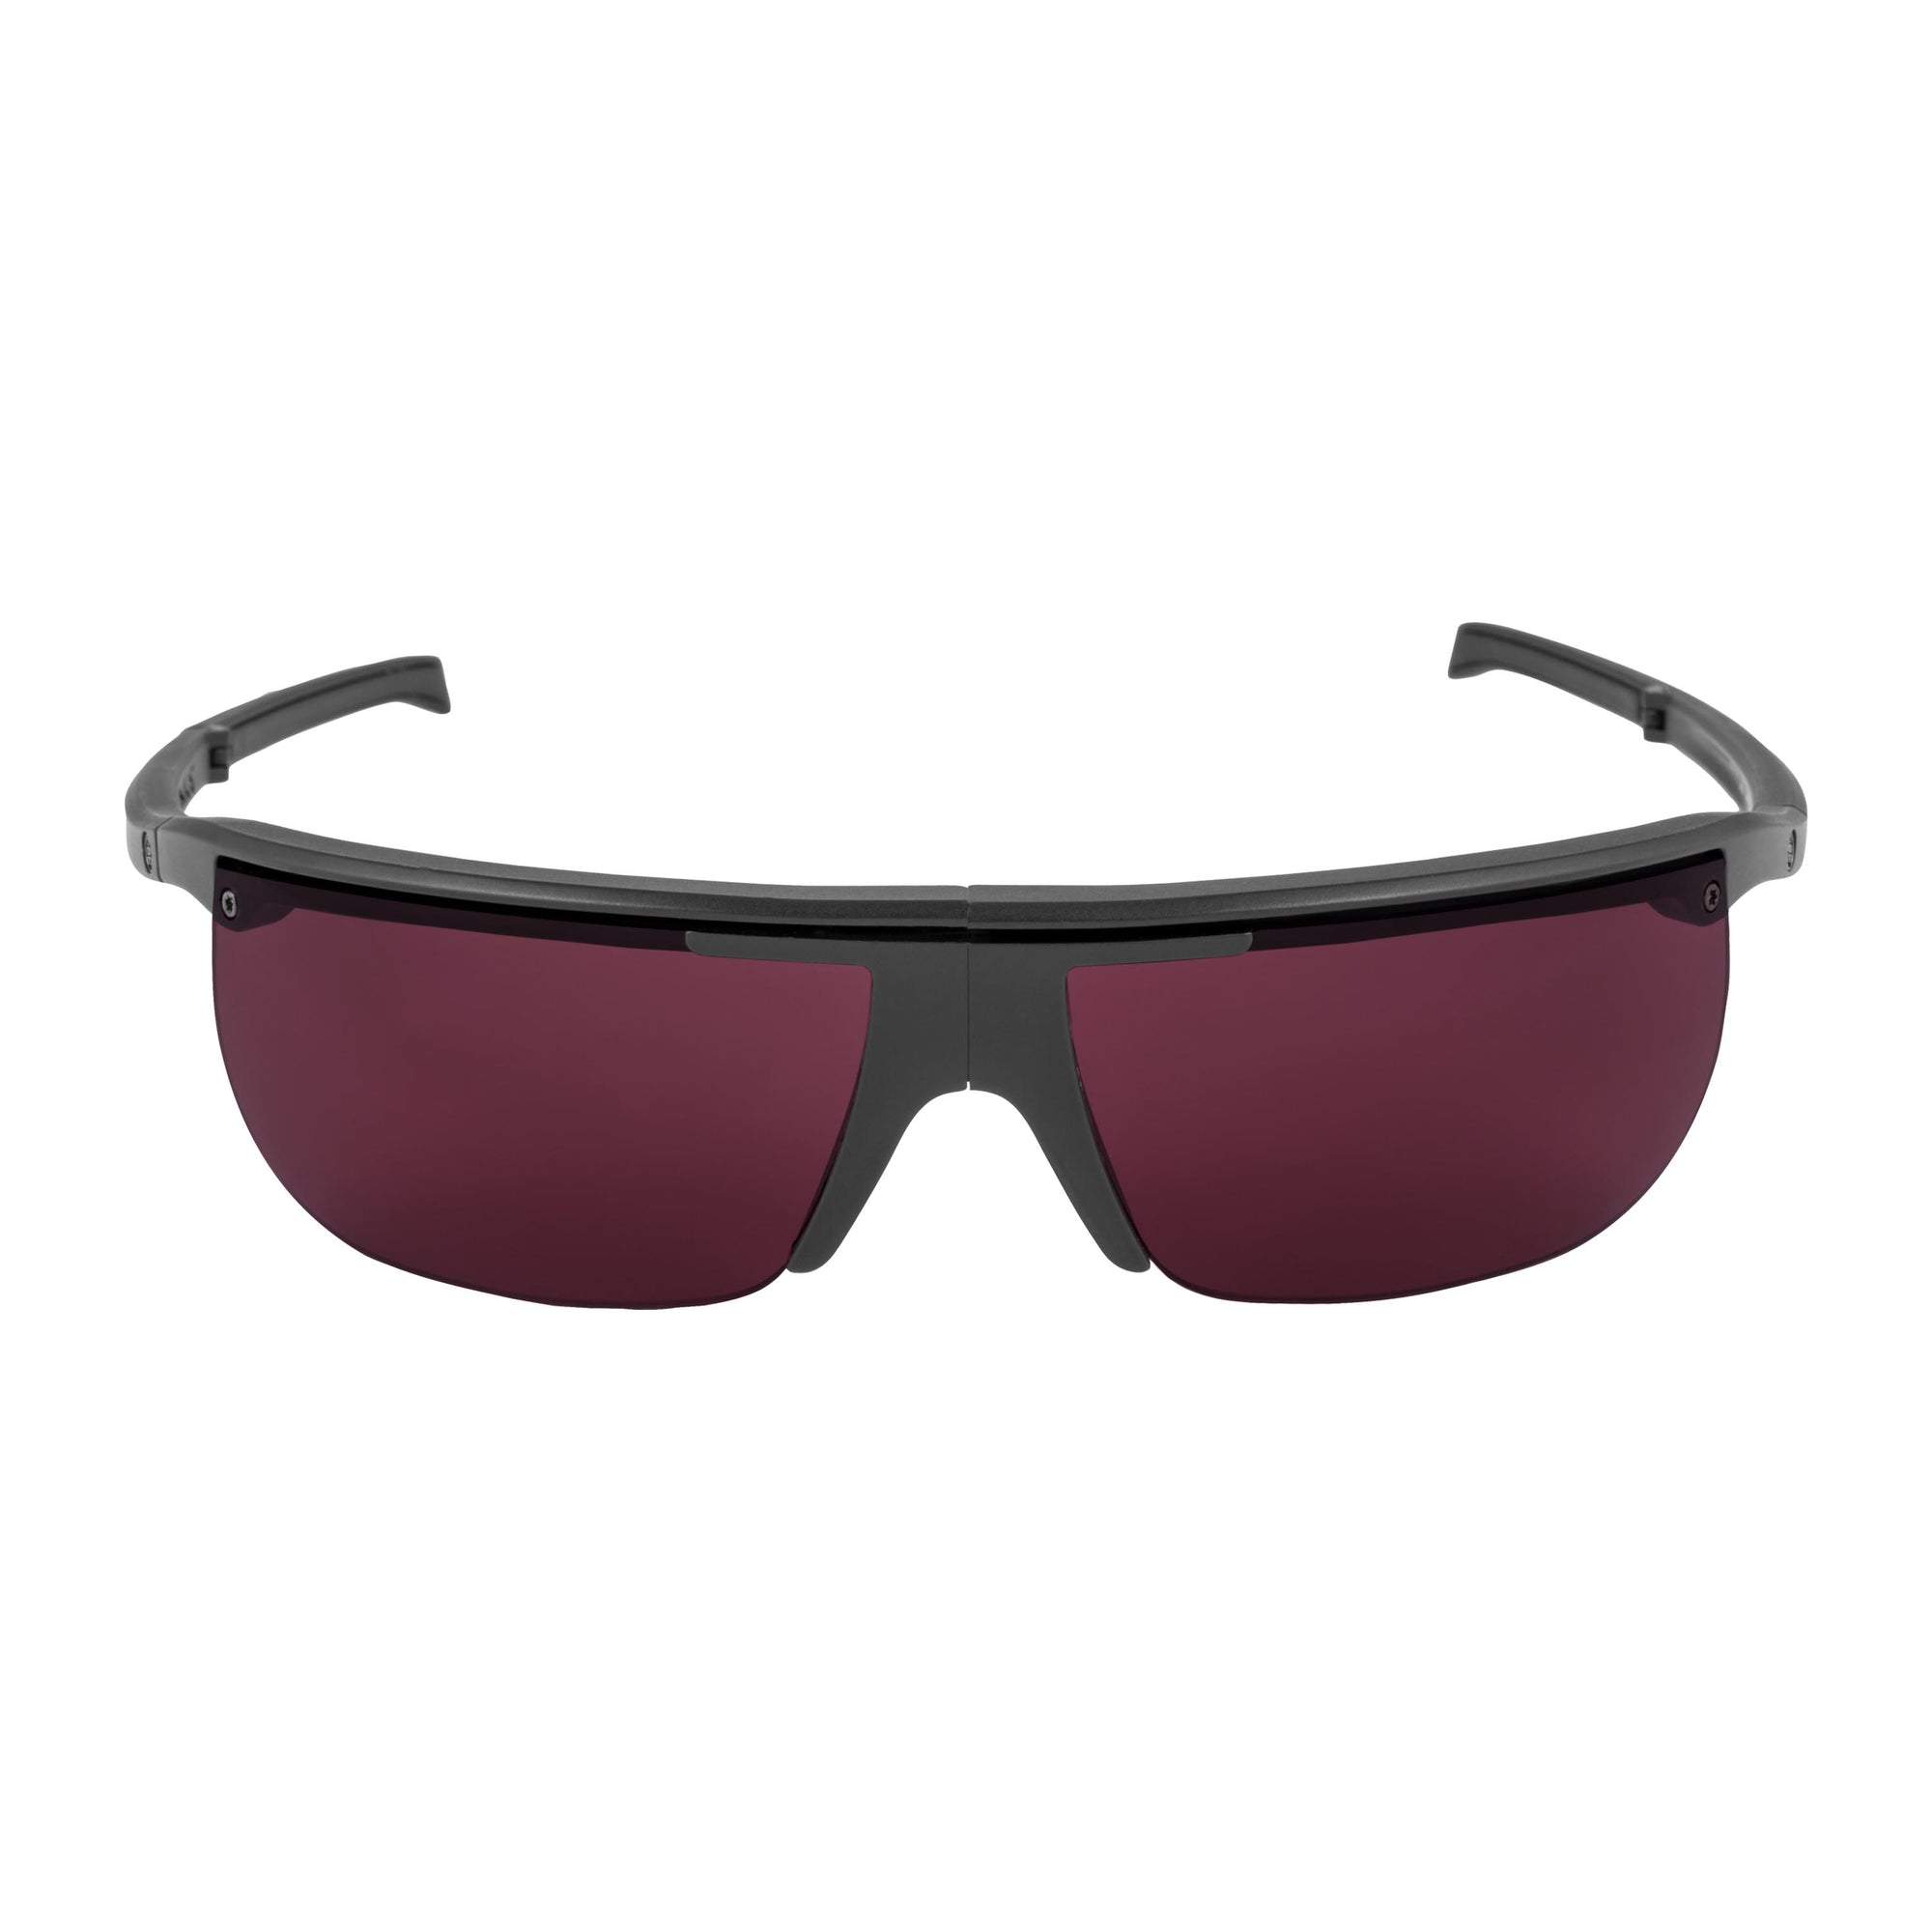 Popticals, Premium Compact Sunglasses, PopArt, 200030-BMPS, Standard Golf Sunglasses, Matte Black Frame, Purple Golf Lenses, Front View